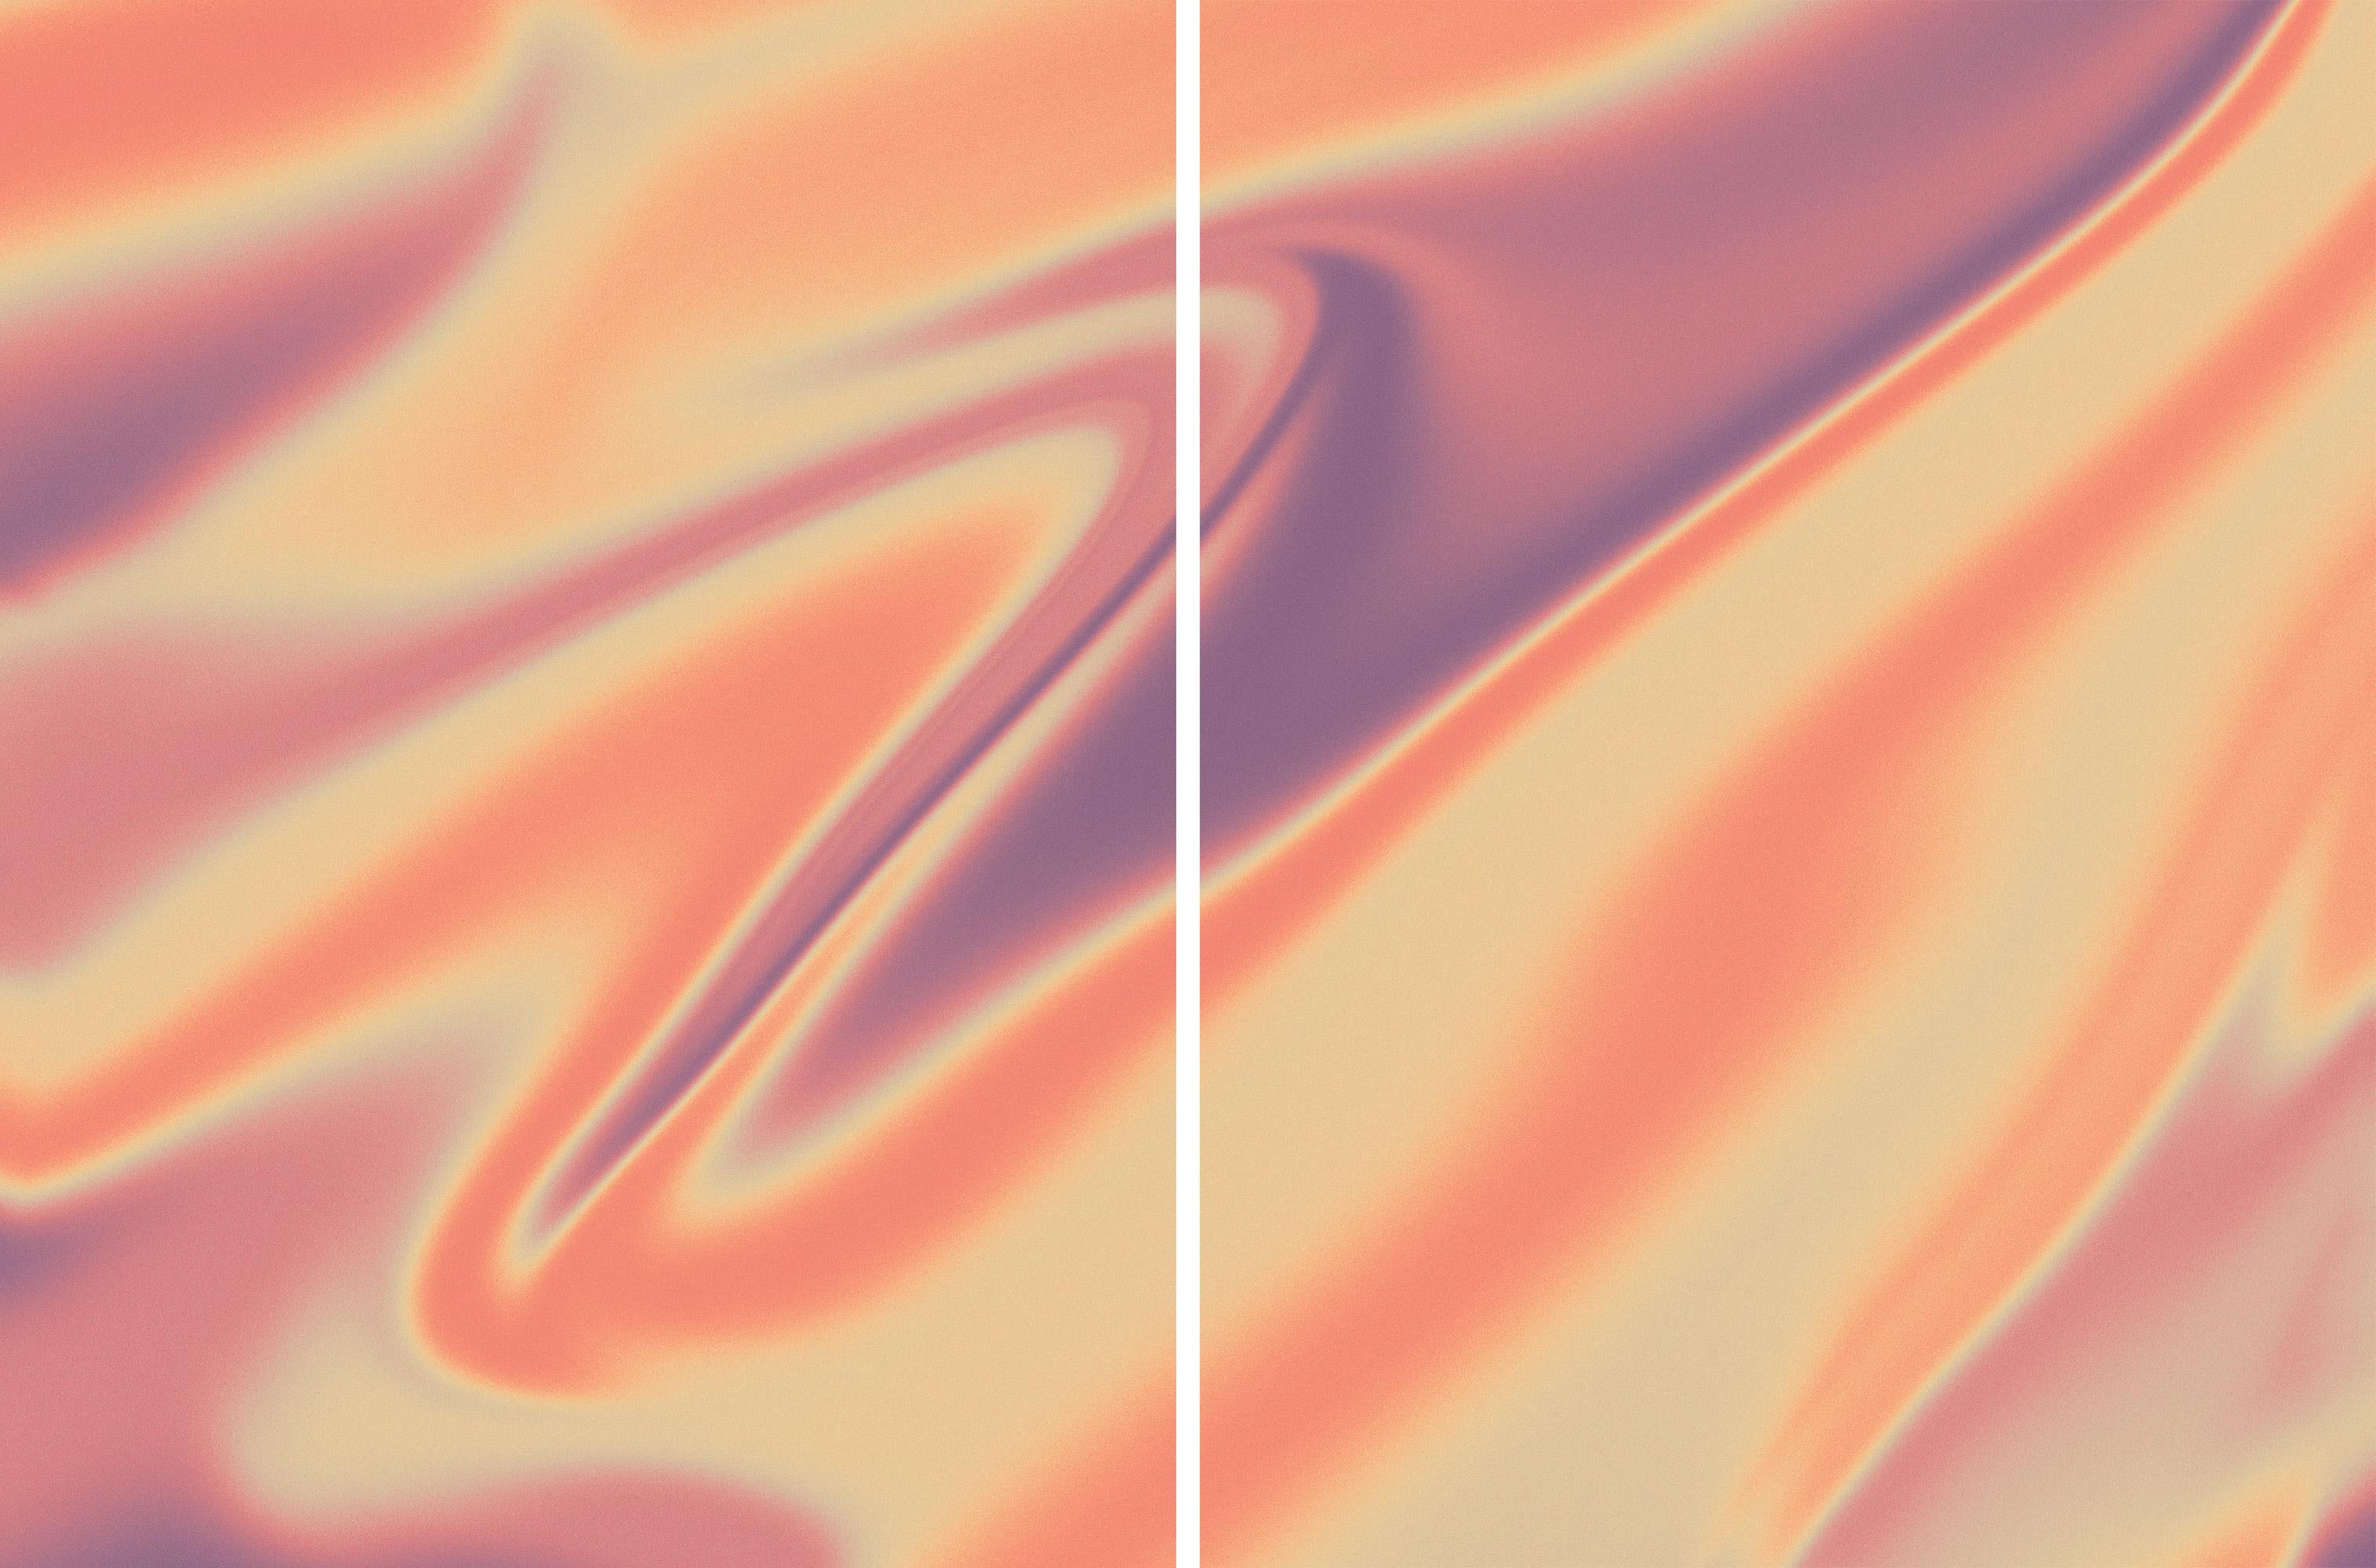 Abstract Print Ryan Rivadeneyra - À l'intérieur de l'œil de Jupiter, formes marbrées dans des tons de terre chauds Diptyque, impression giclée